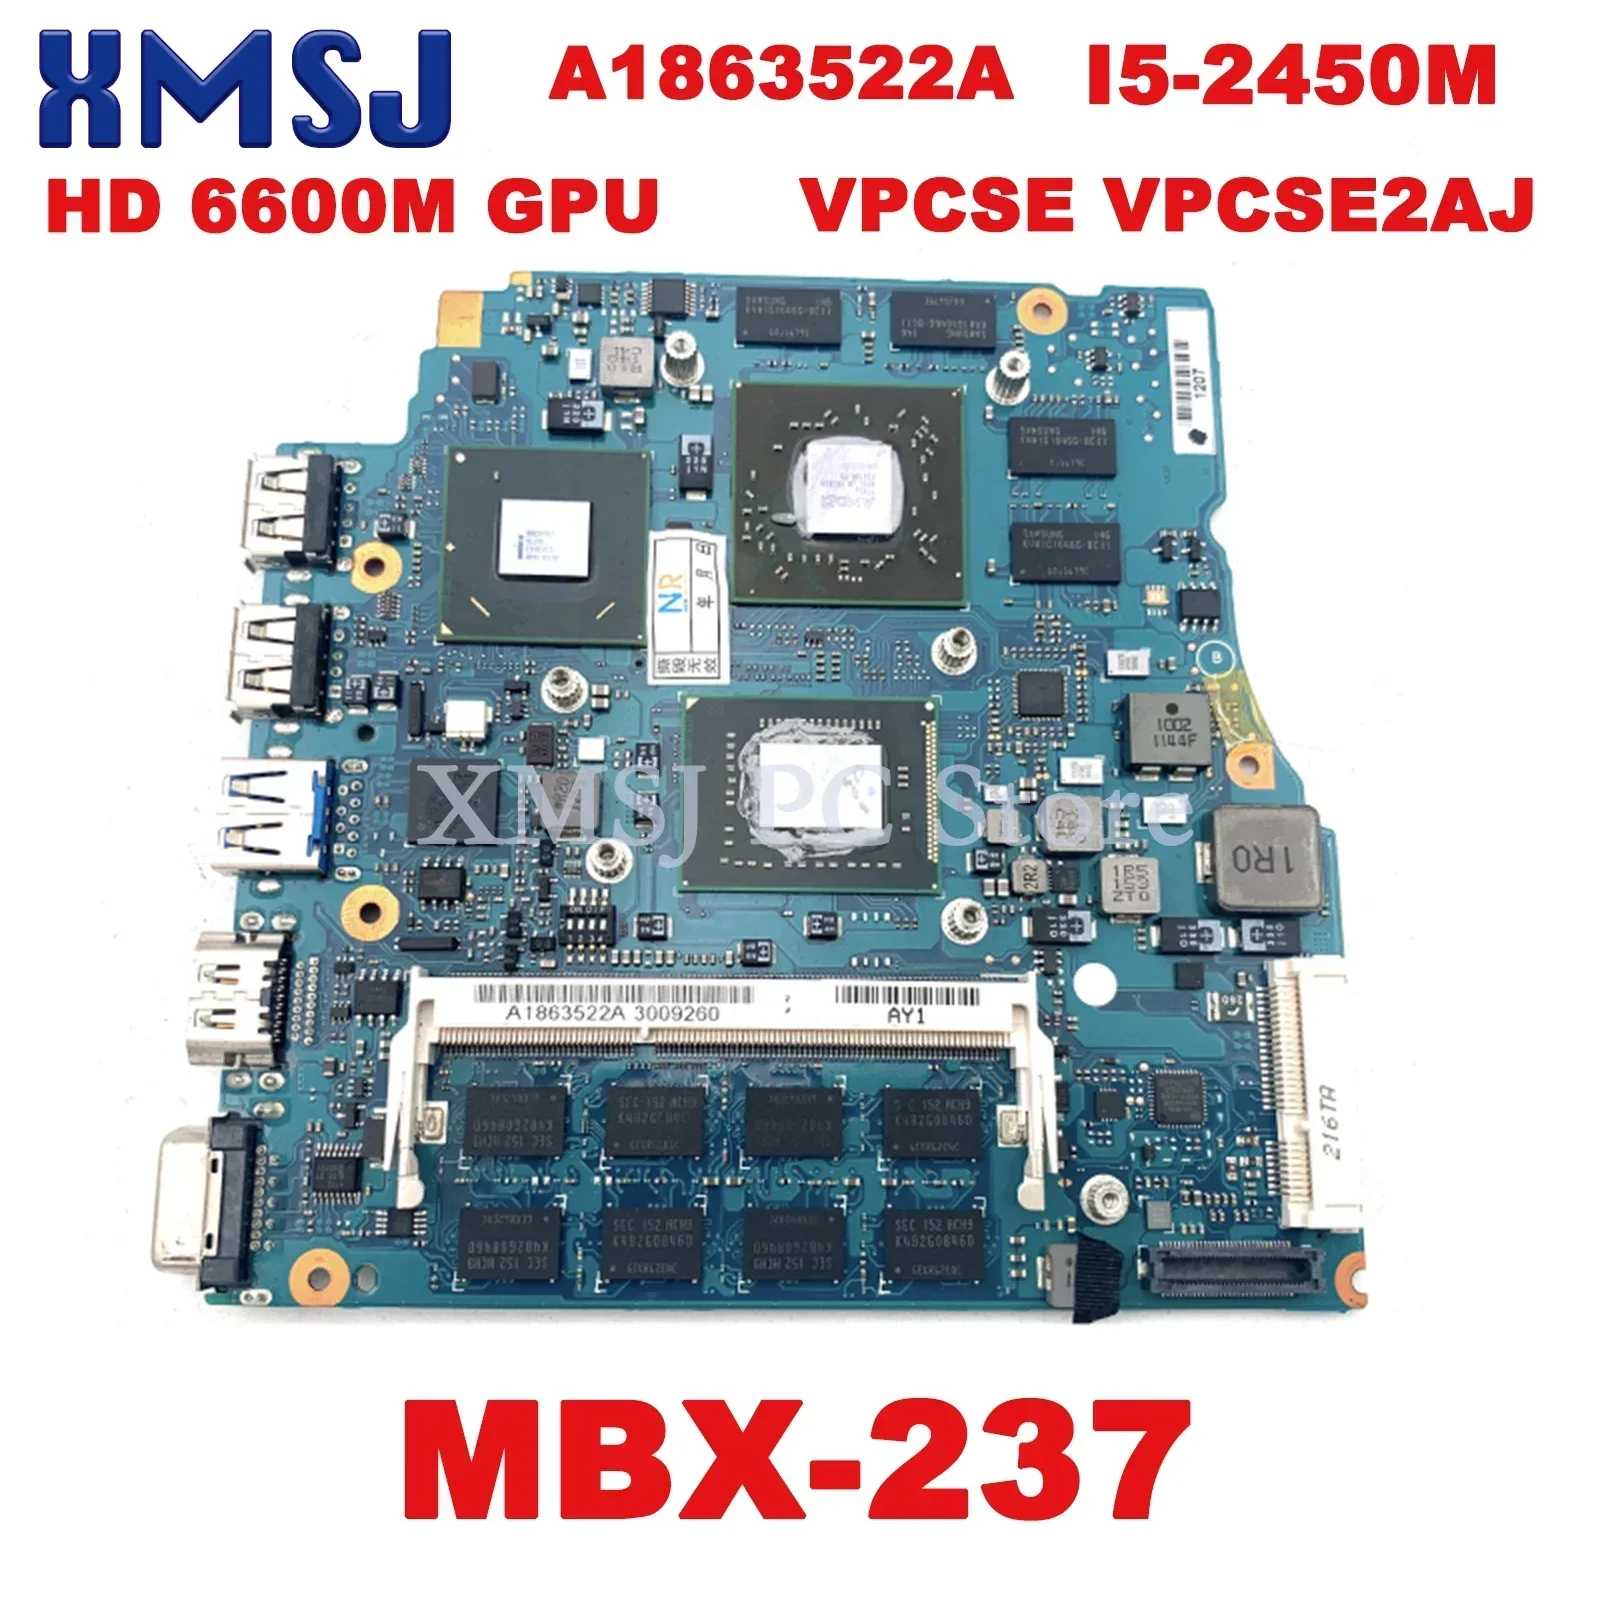 

Системная плата XMSJ для VPCSE VPCSE2AJ материнская плата для ноутбука A1863522A стандартная 2,50 ГГц HD 6600M GPU основная плата